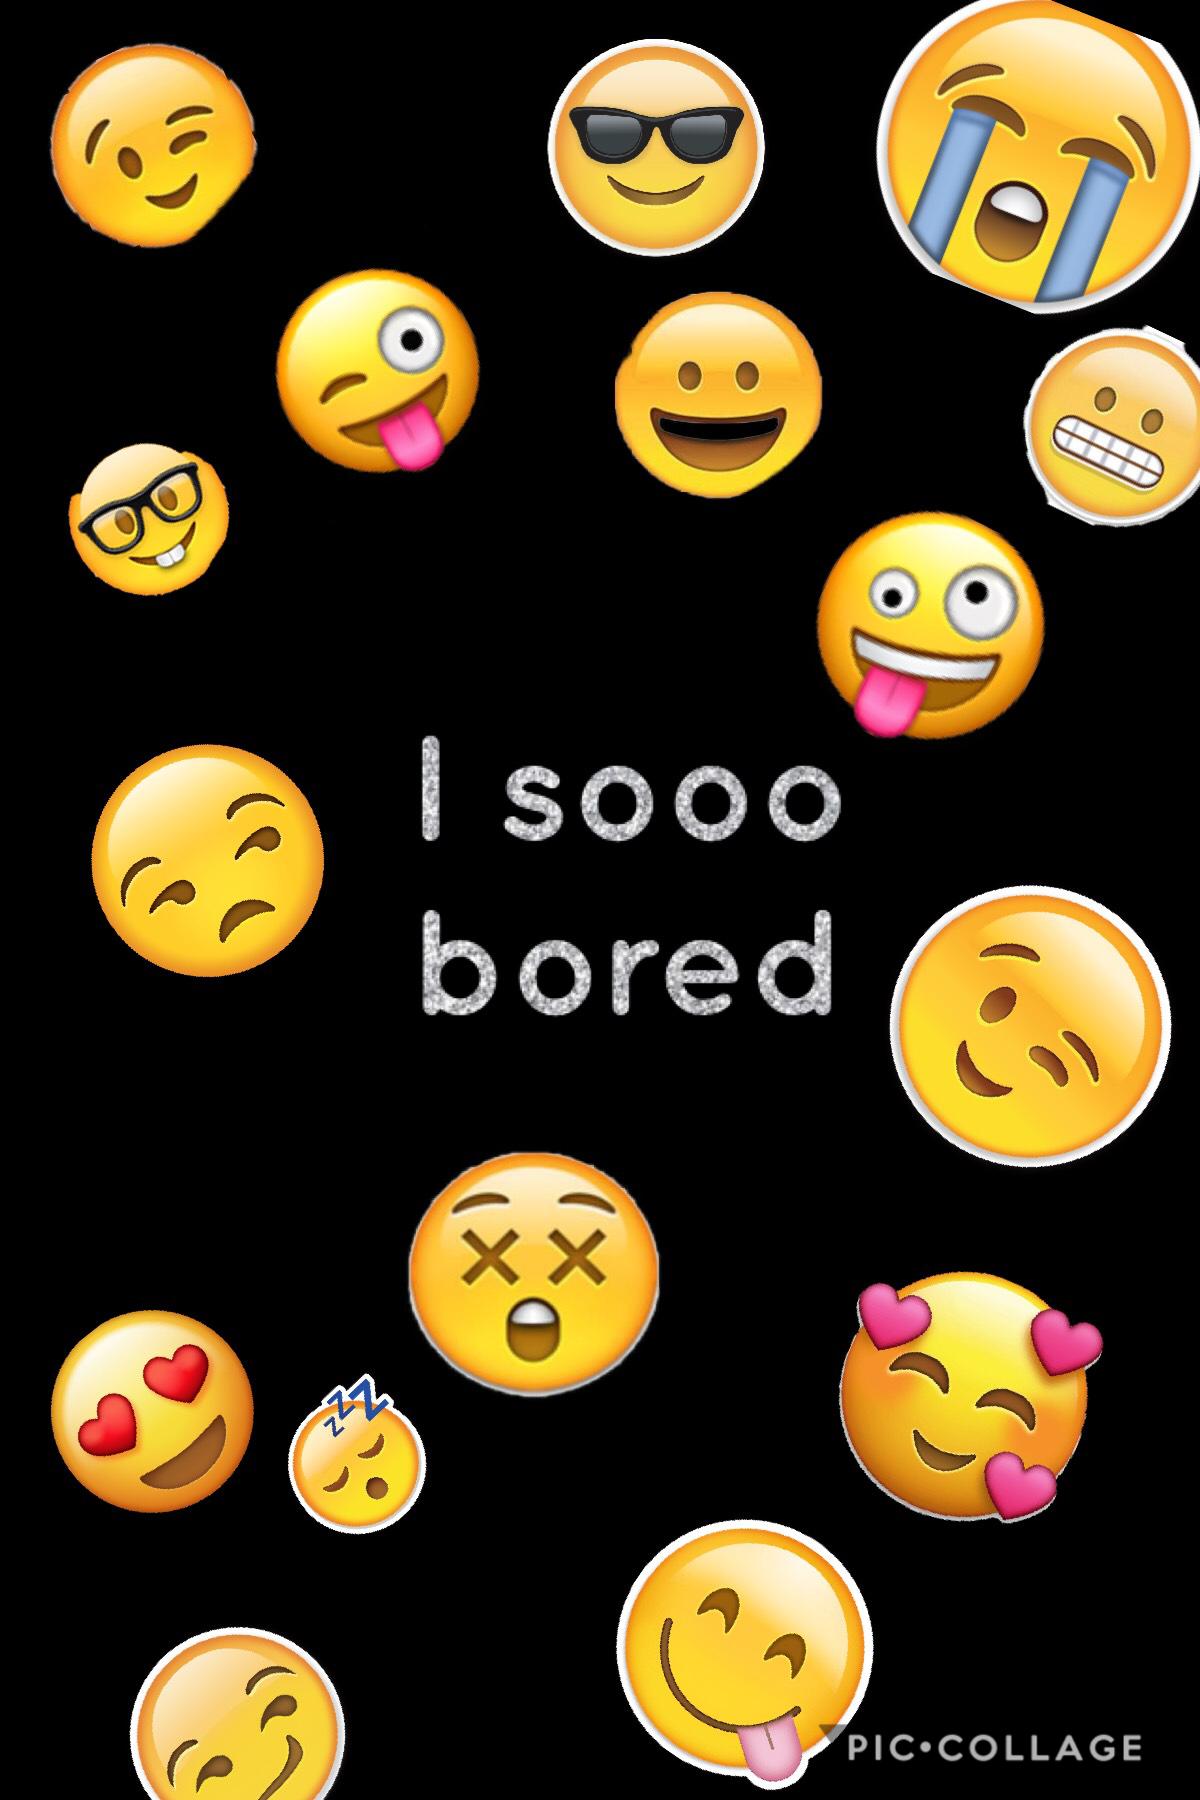 I’m sooo bored